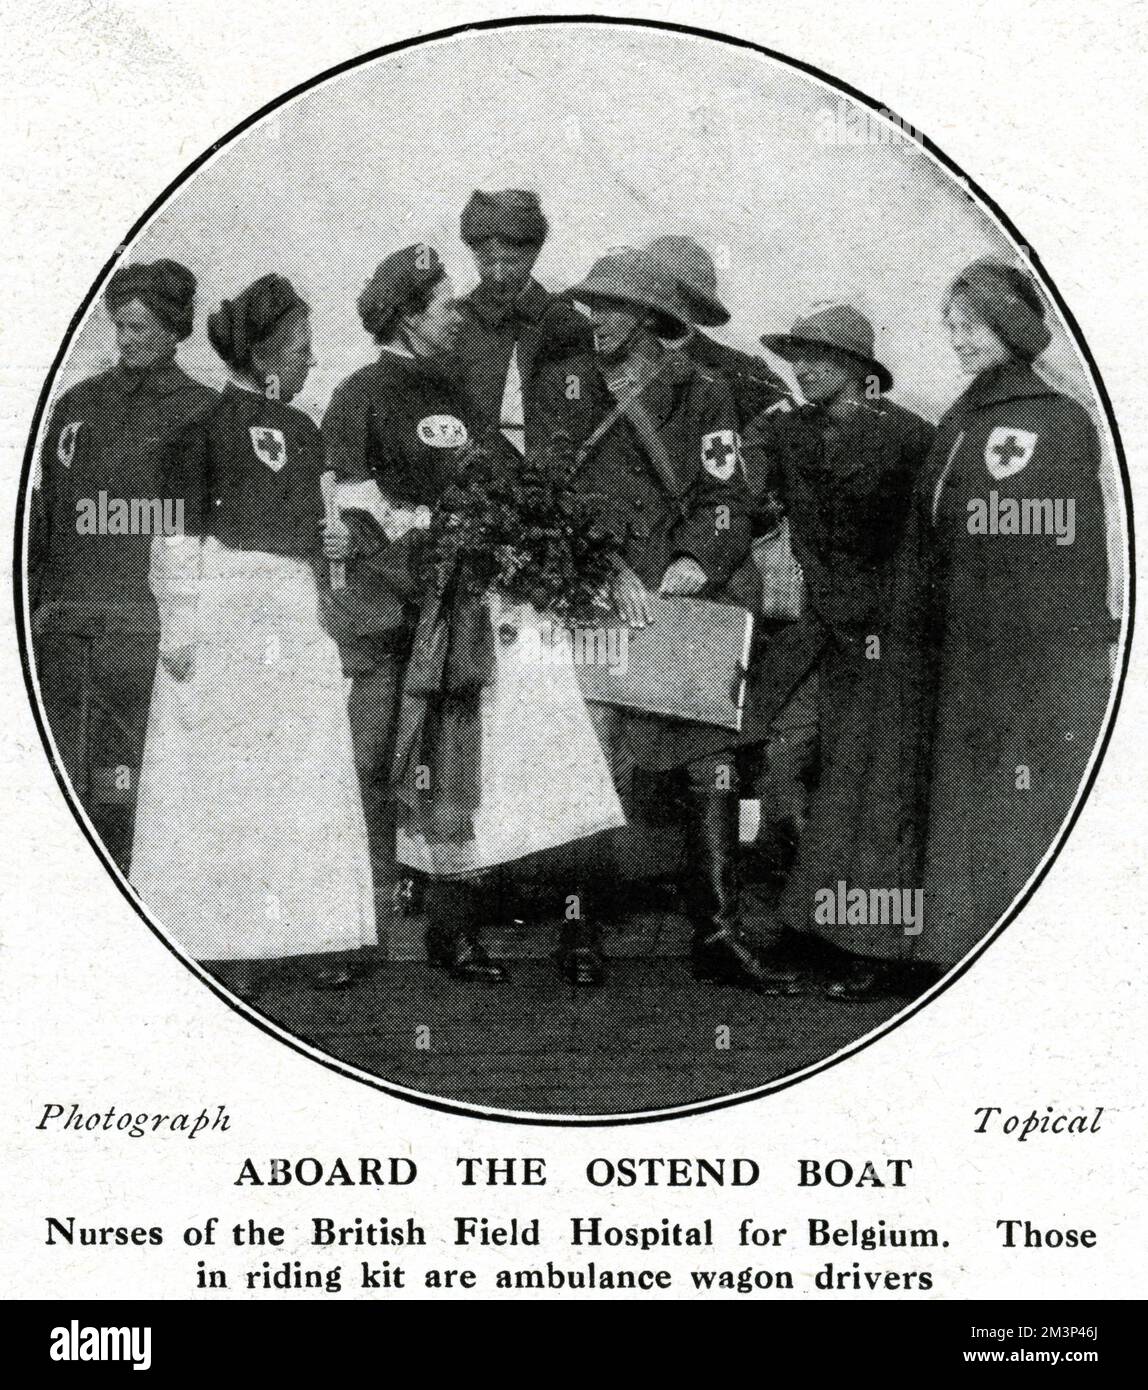 Un gruppo di infermieri a bordo di una barca destinata al British Field Hospital in Belgio durante la prima guerra mondiale. Quelli che indossano il corredo di corsa sono autisti del carro dell'ambulanza. Data: 1914 Foto Stock